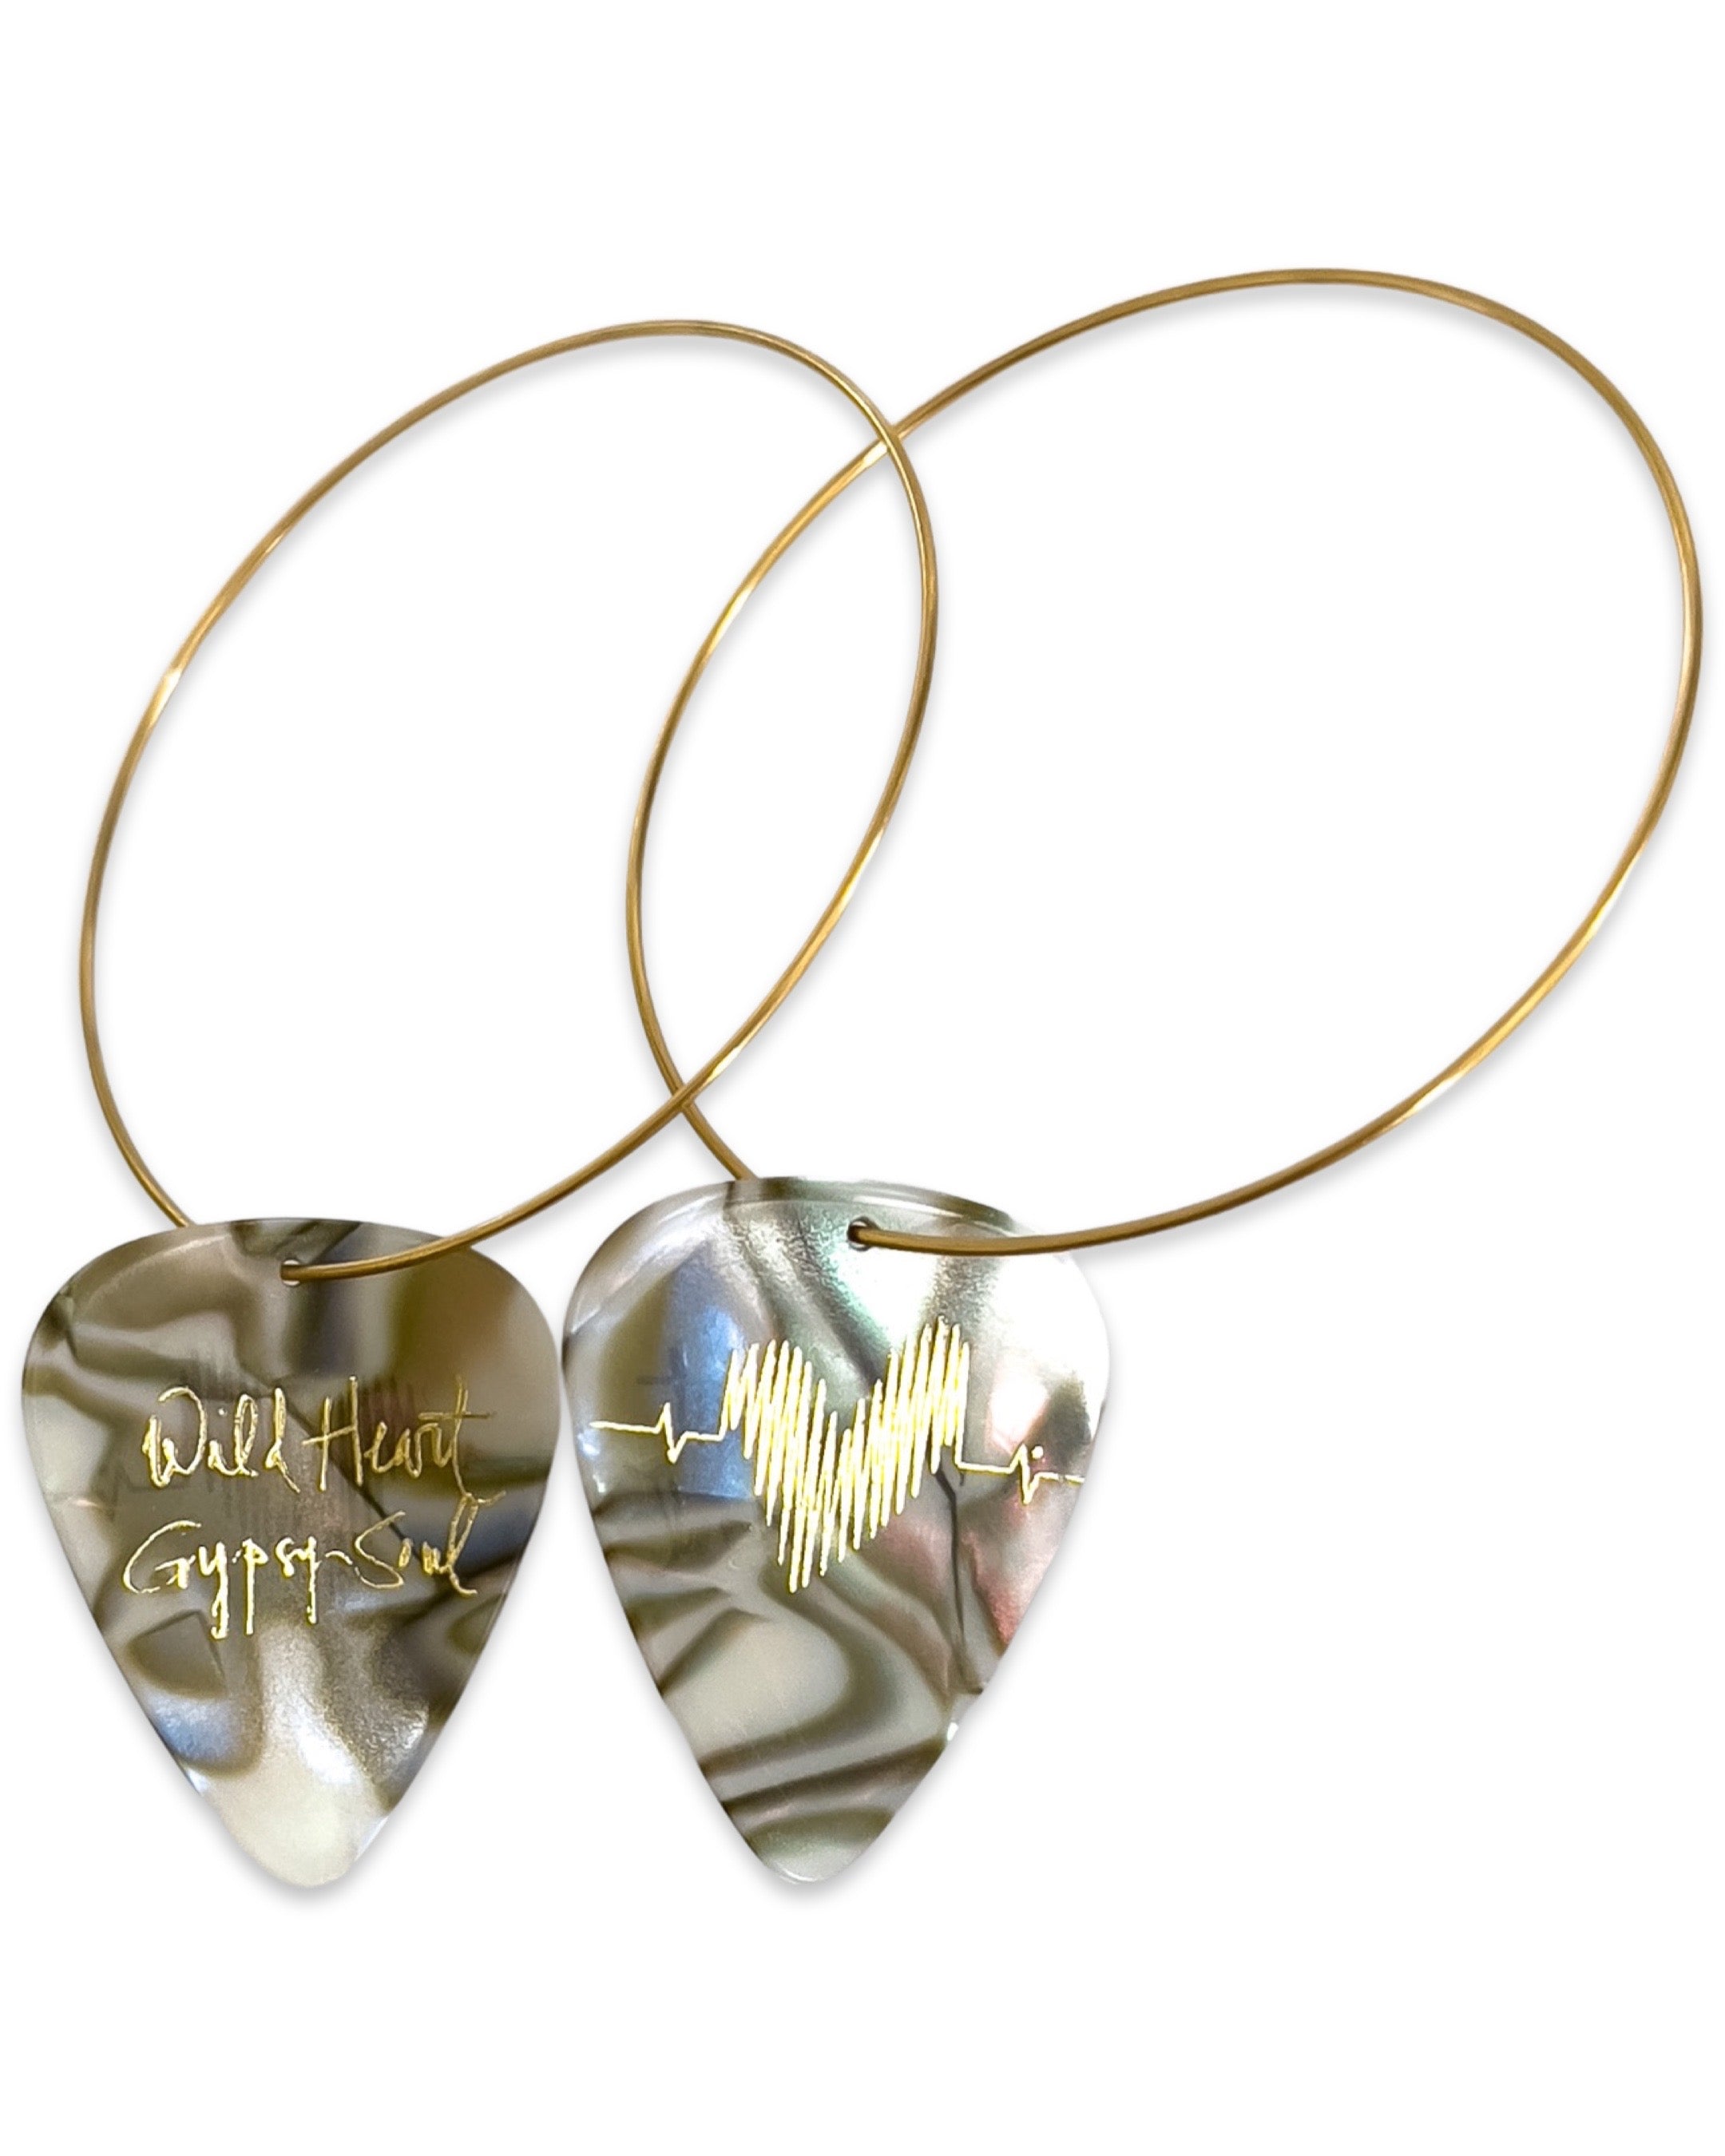 Wild Heart Gypsy Soul Abalone Single Guitar Pick Earrings